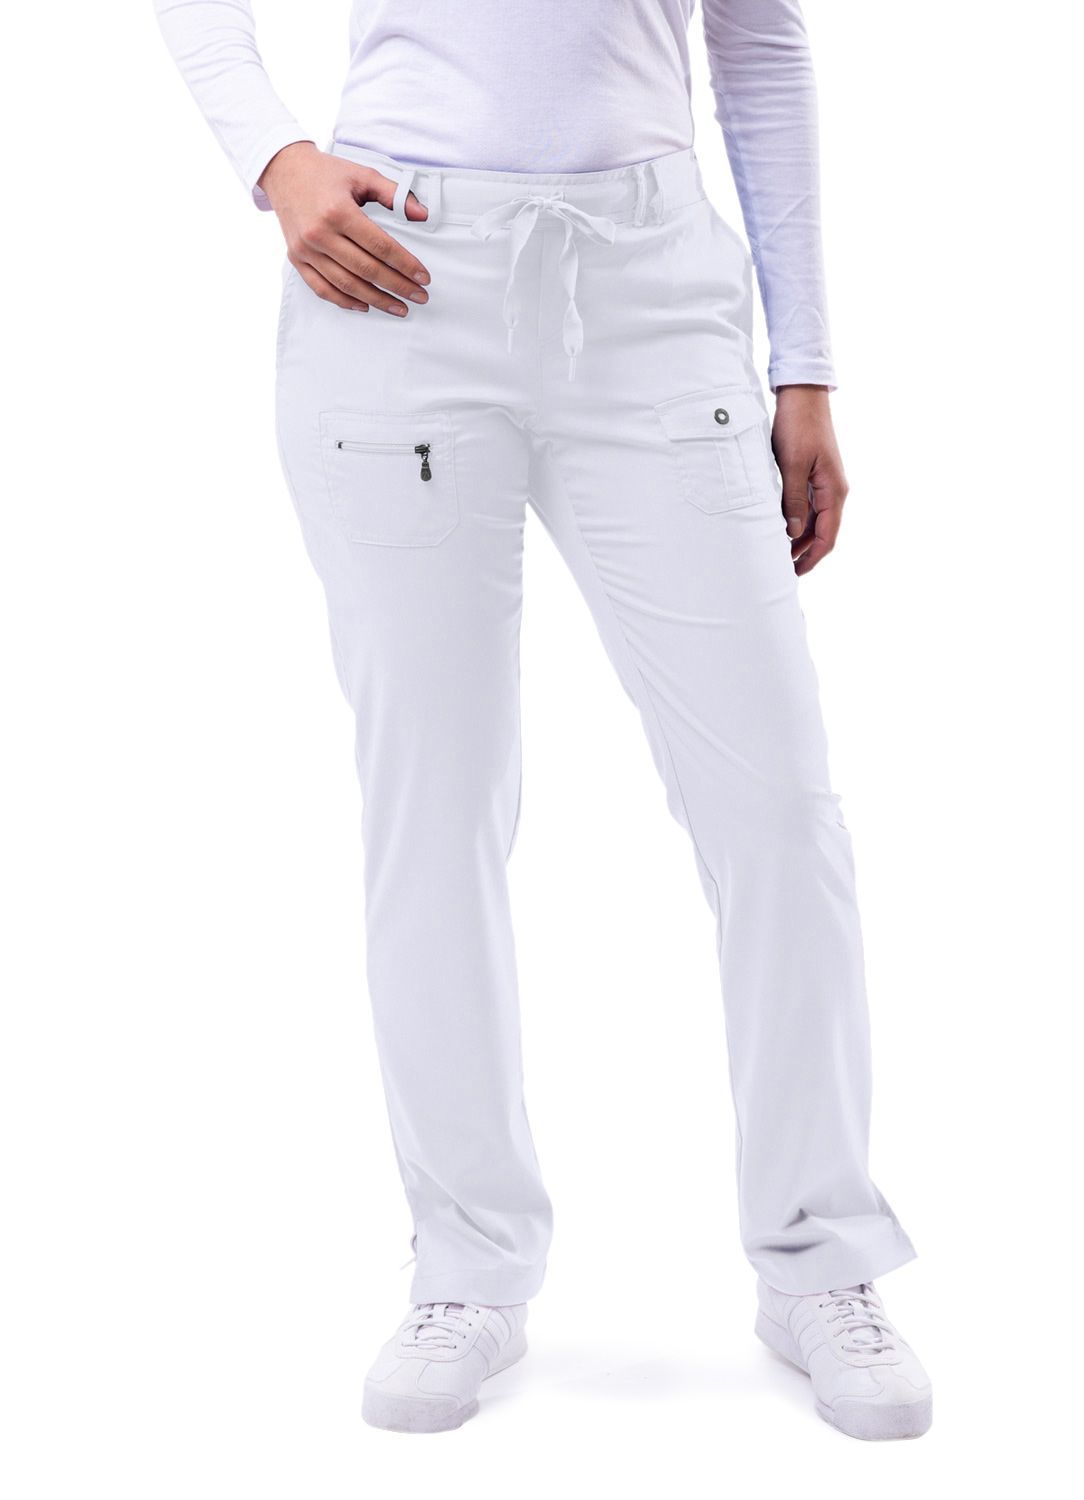 Clearance Adar Pro Tall Slim Fit 6-Pocket Pants